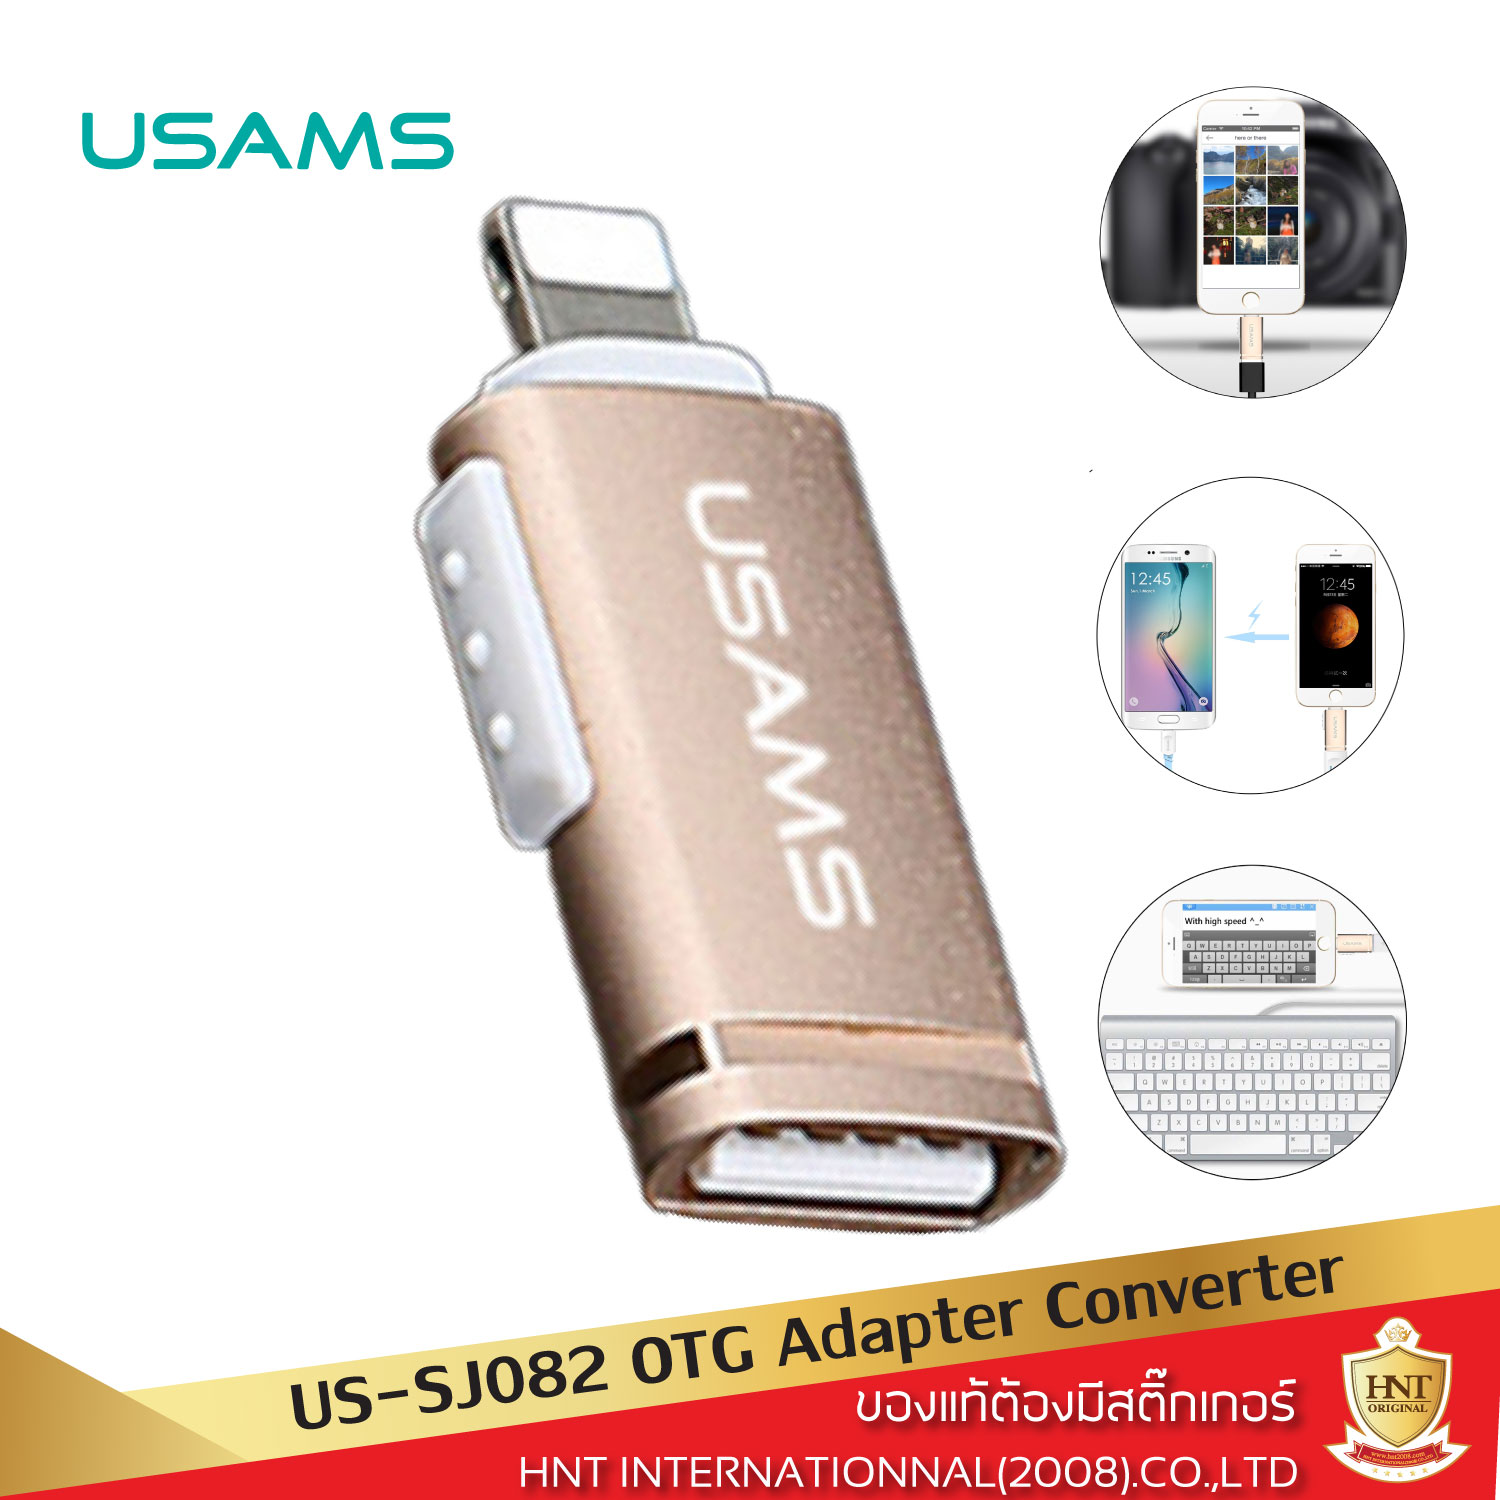 หัวแปลง Usams รุ่น US-SJ082 OTG Adapter เชื่อมต่อ Lightning to USB สำหรับการรับส่งข้อมูล ส่งรูปภาพและวีดีโอจากกล้องสู่มือถือ และเสริมการใช้งานอื่นๆ อุปกรณ์แปลงสำหรับอุปกรณ์พอร์ต Lightning HNT รับประกันการใช้งาน 6 เดือน